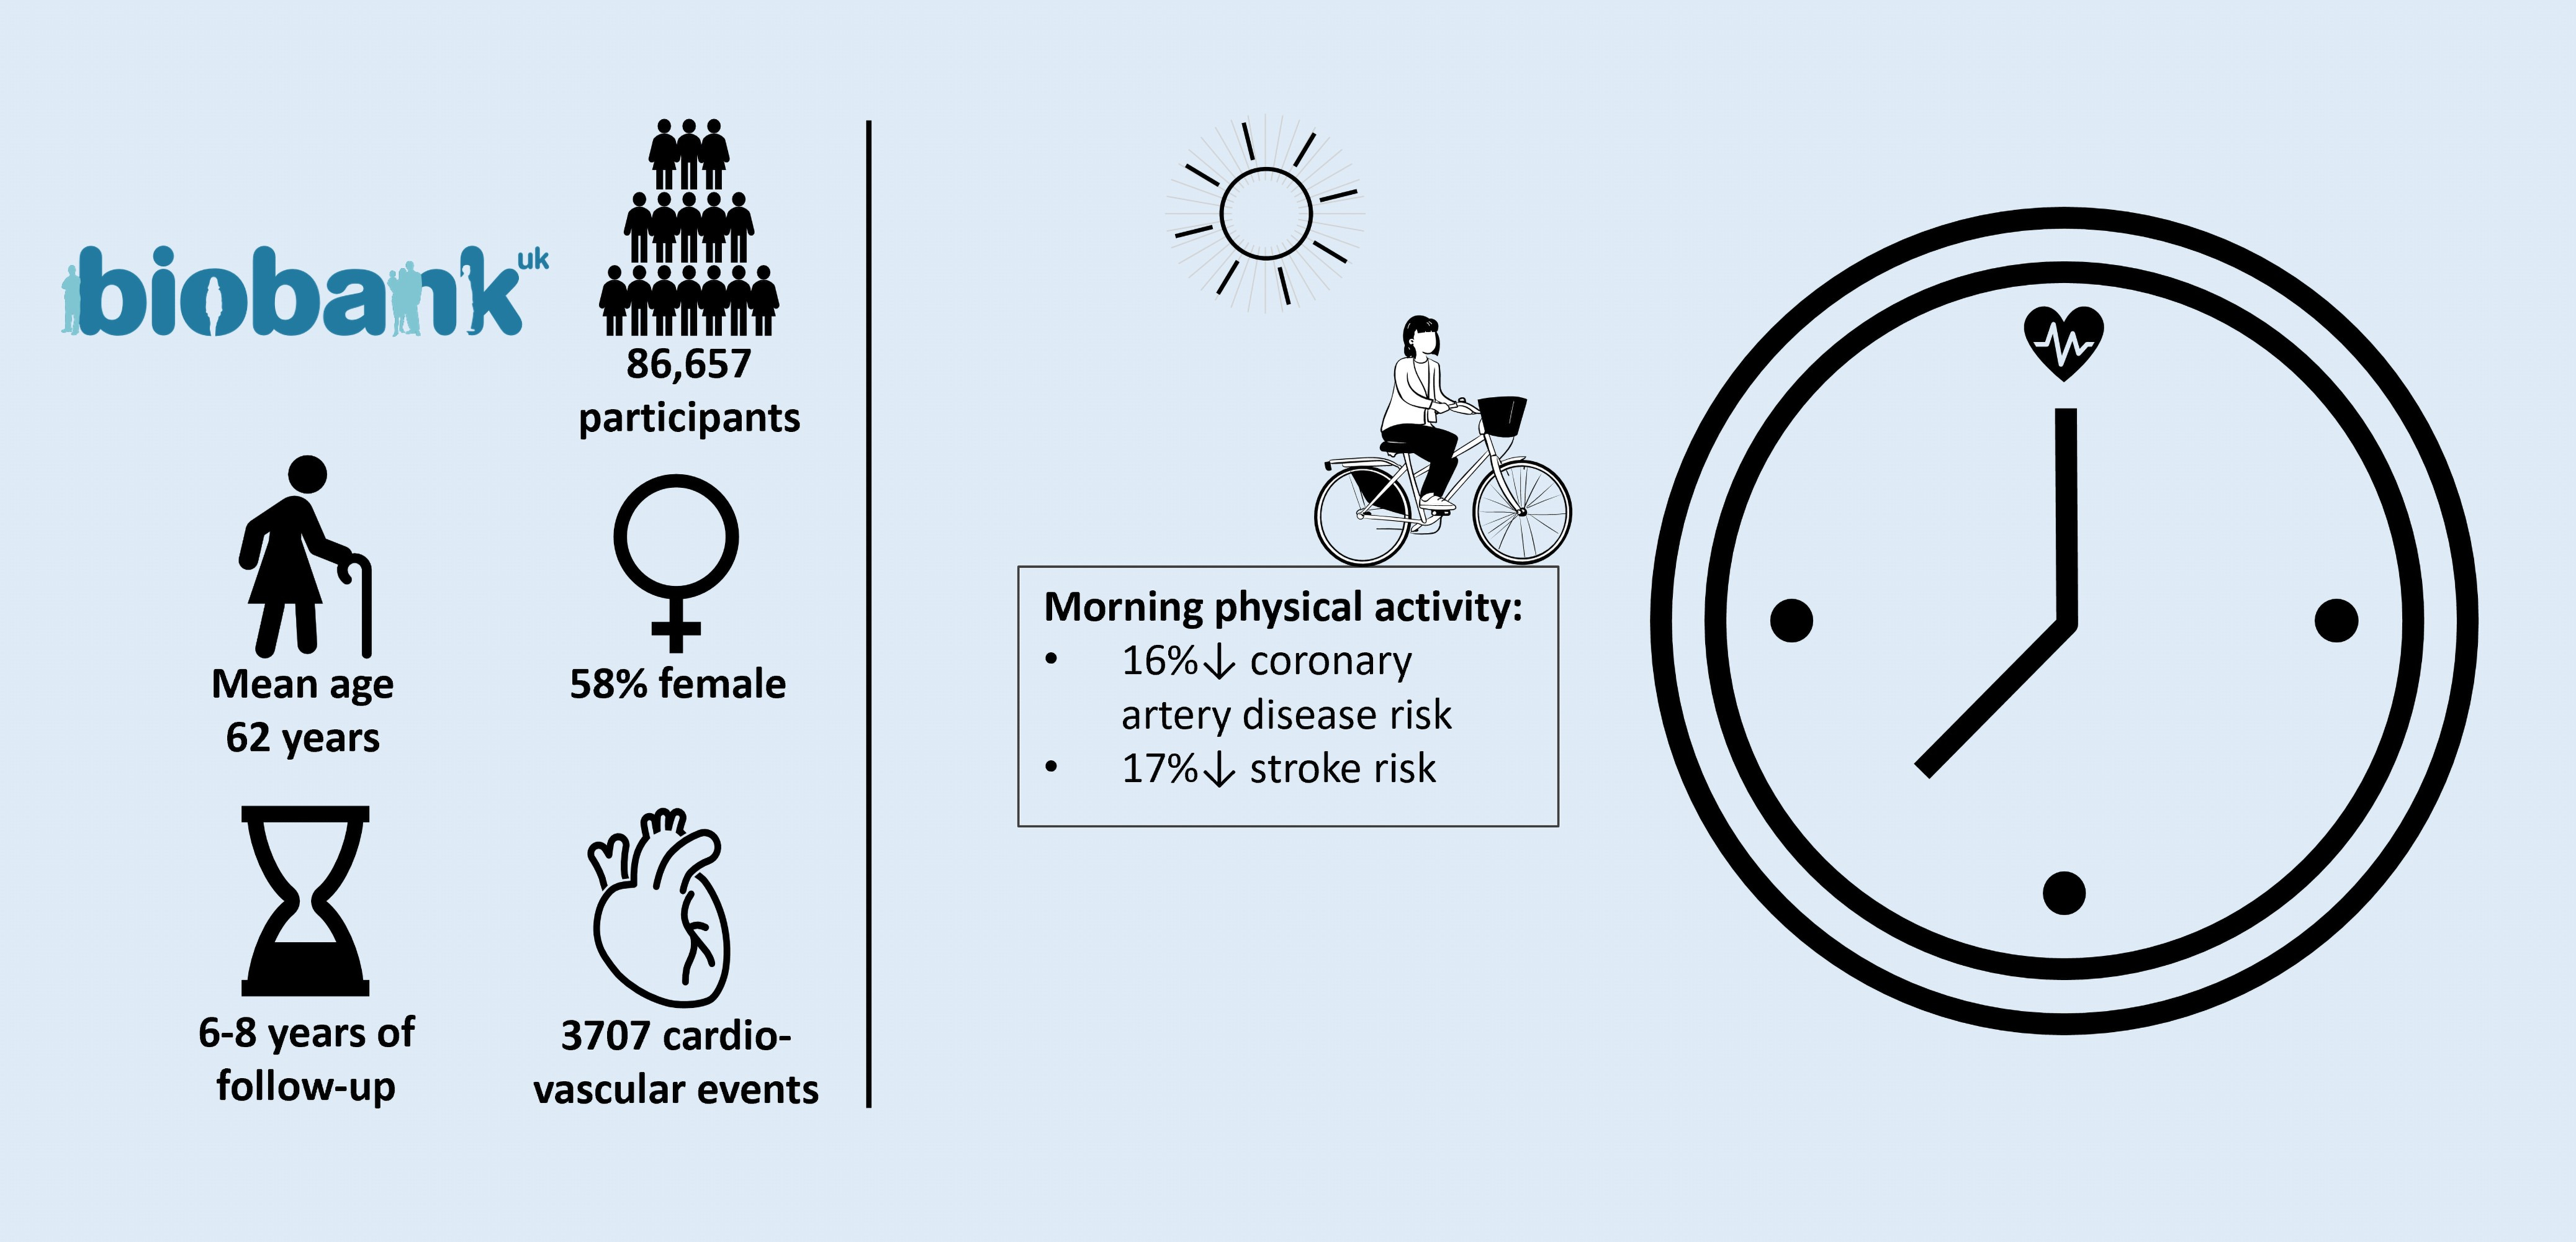 研究发现一天中锻炼的时间可能影响心脏健康